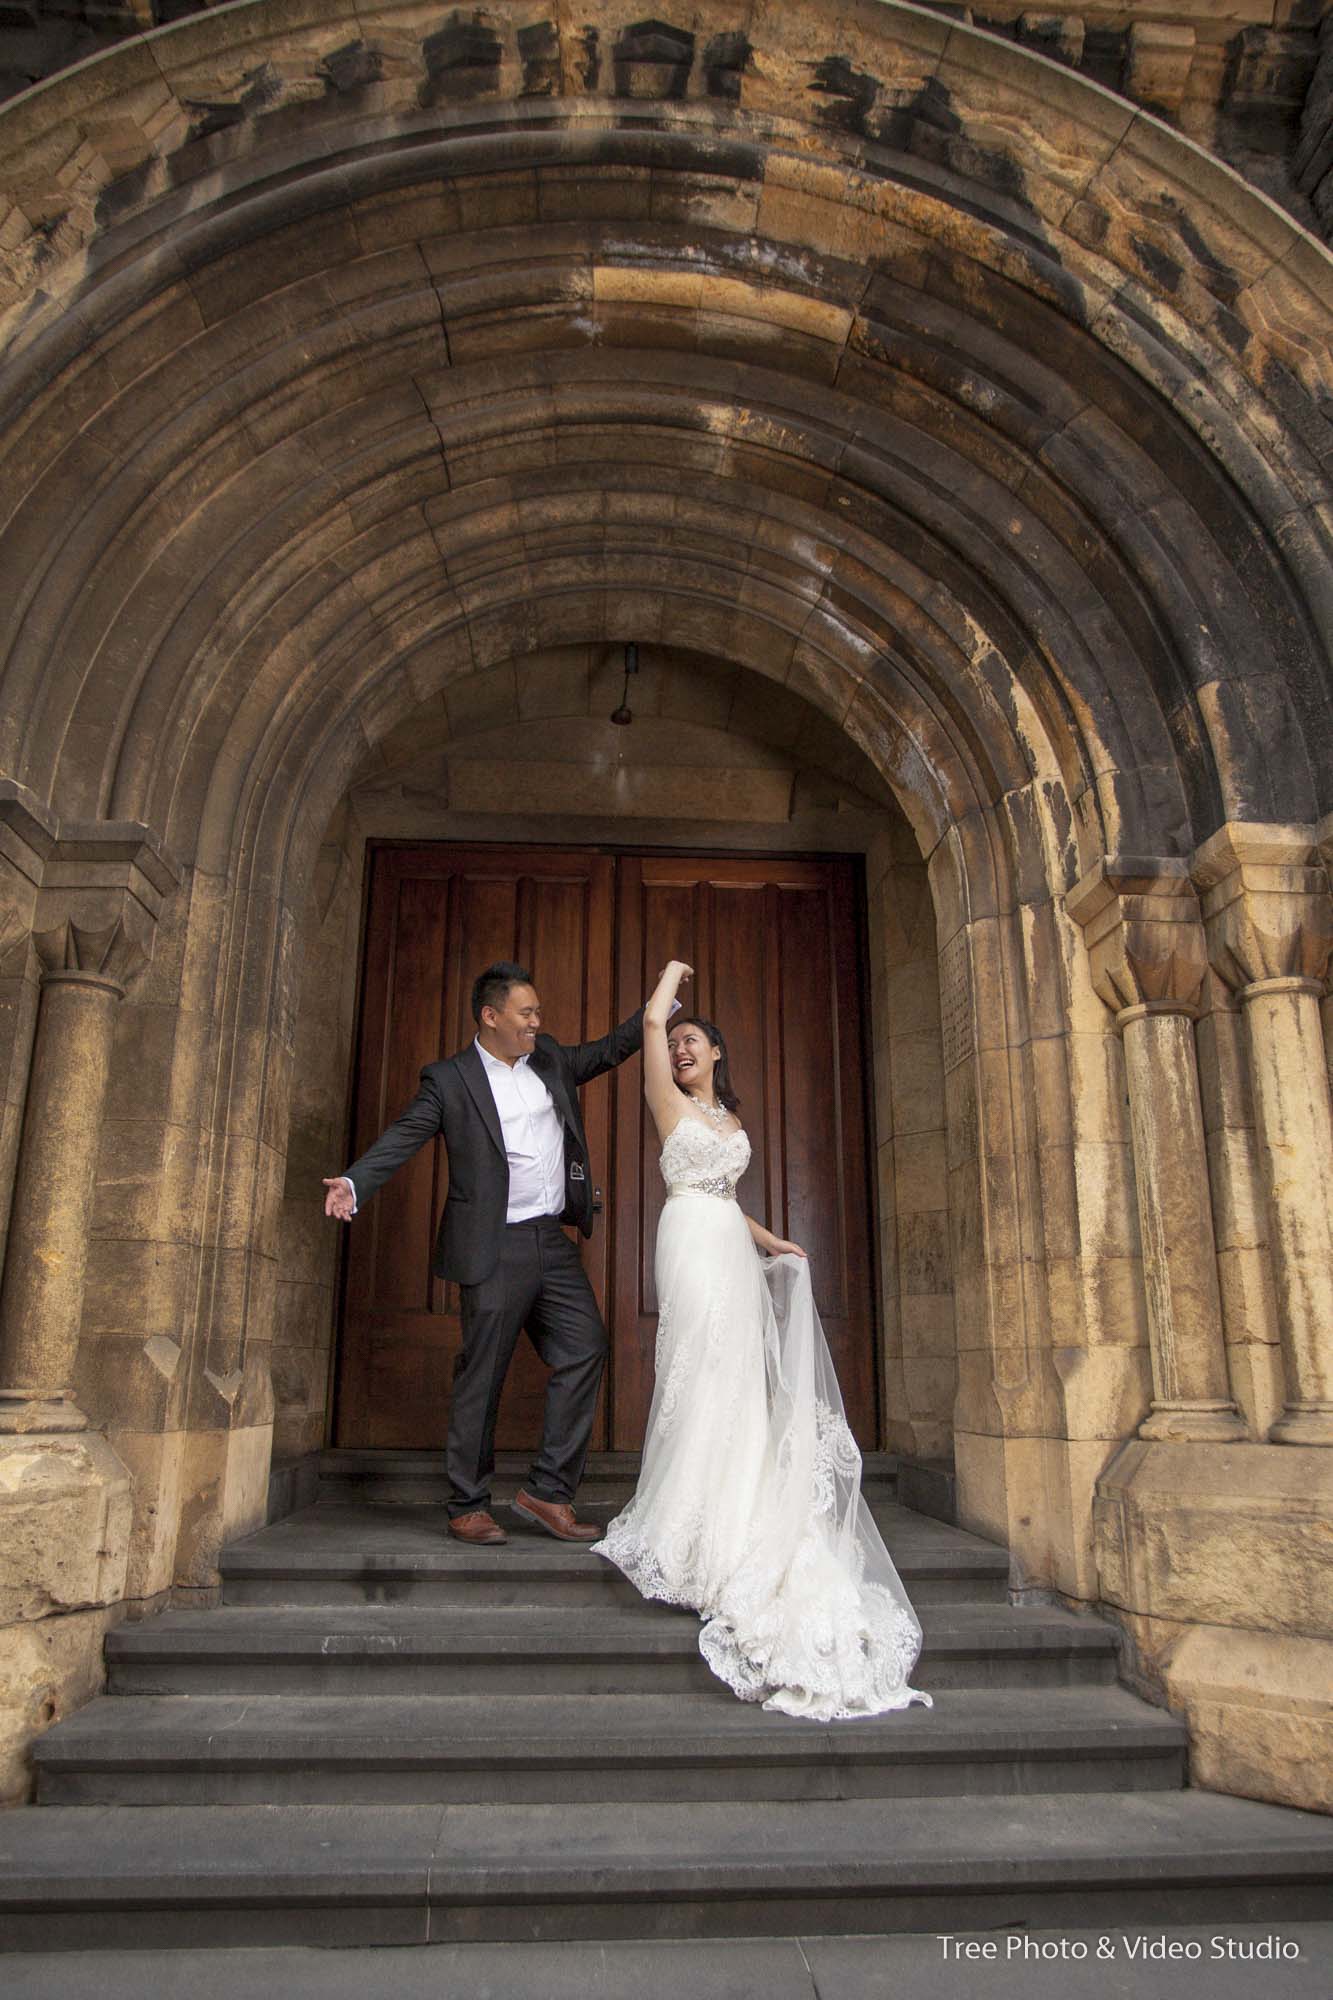 Pre wedding Melbourne Photography Carlton Gardens - Pre-Wedding Photoshoot | The Comprehensive Guide